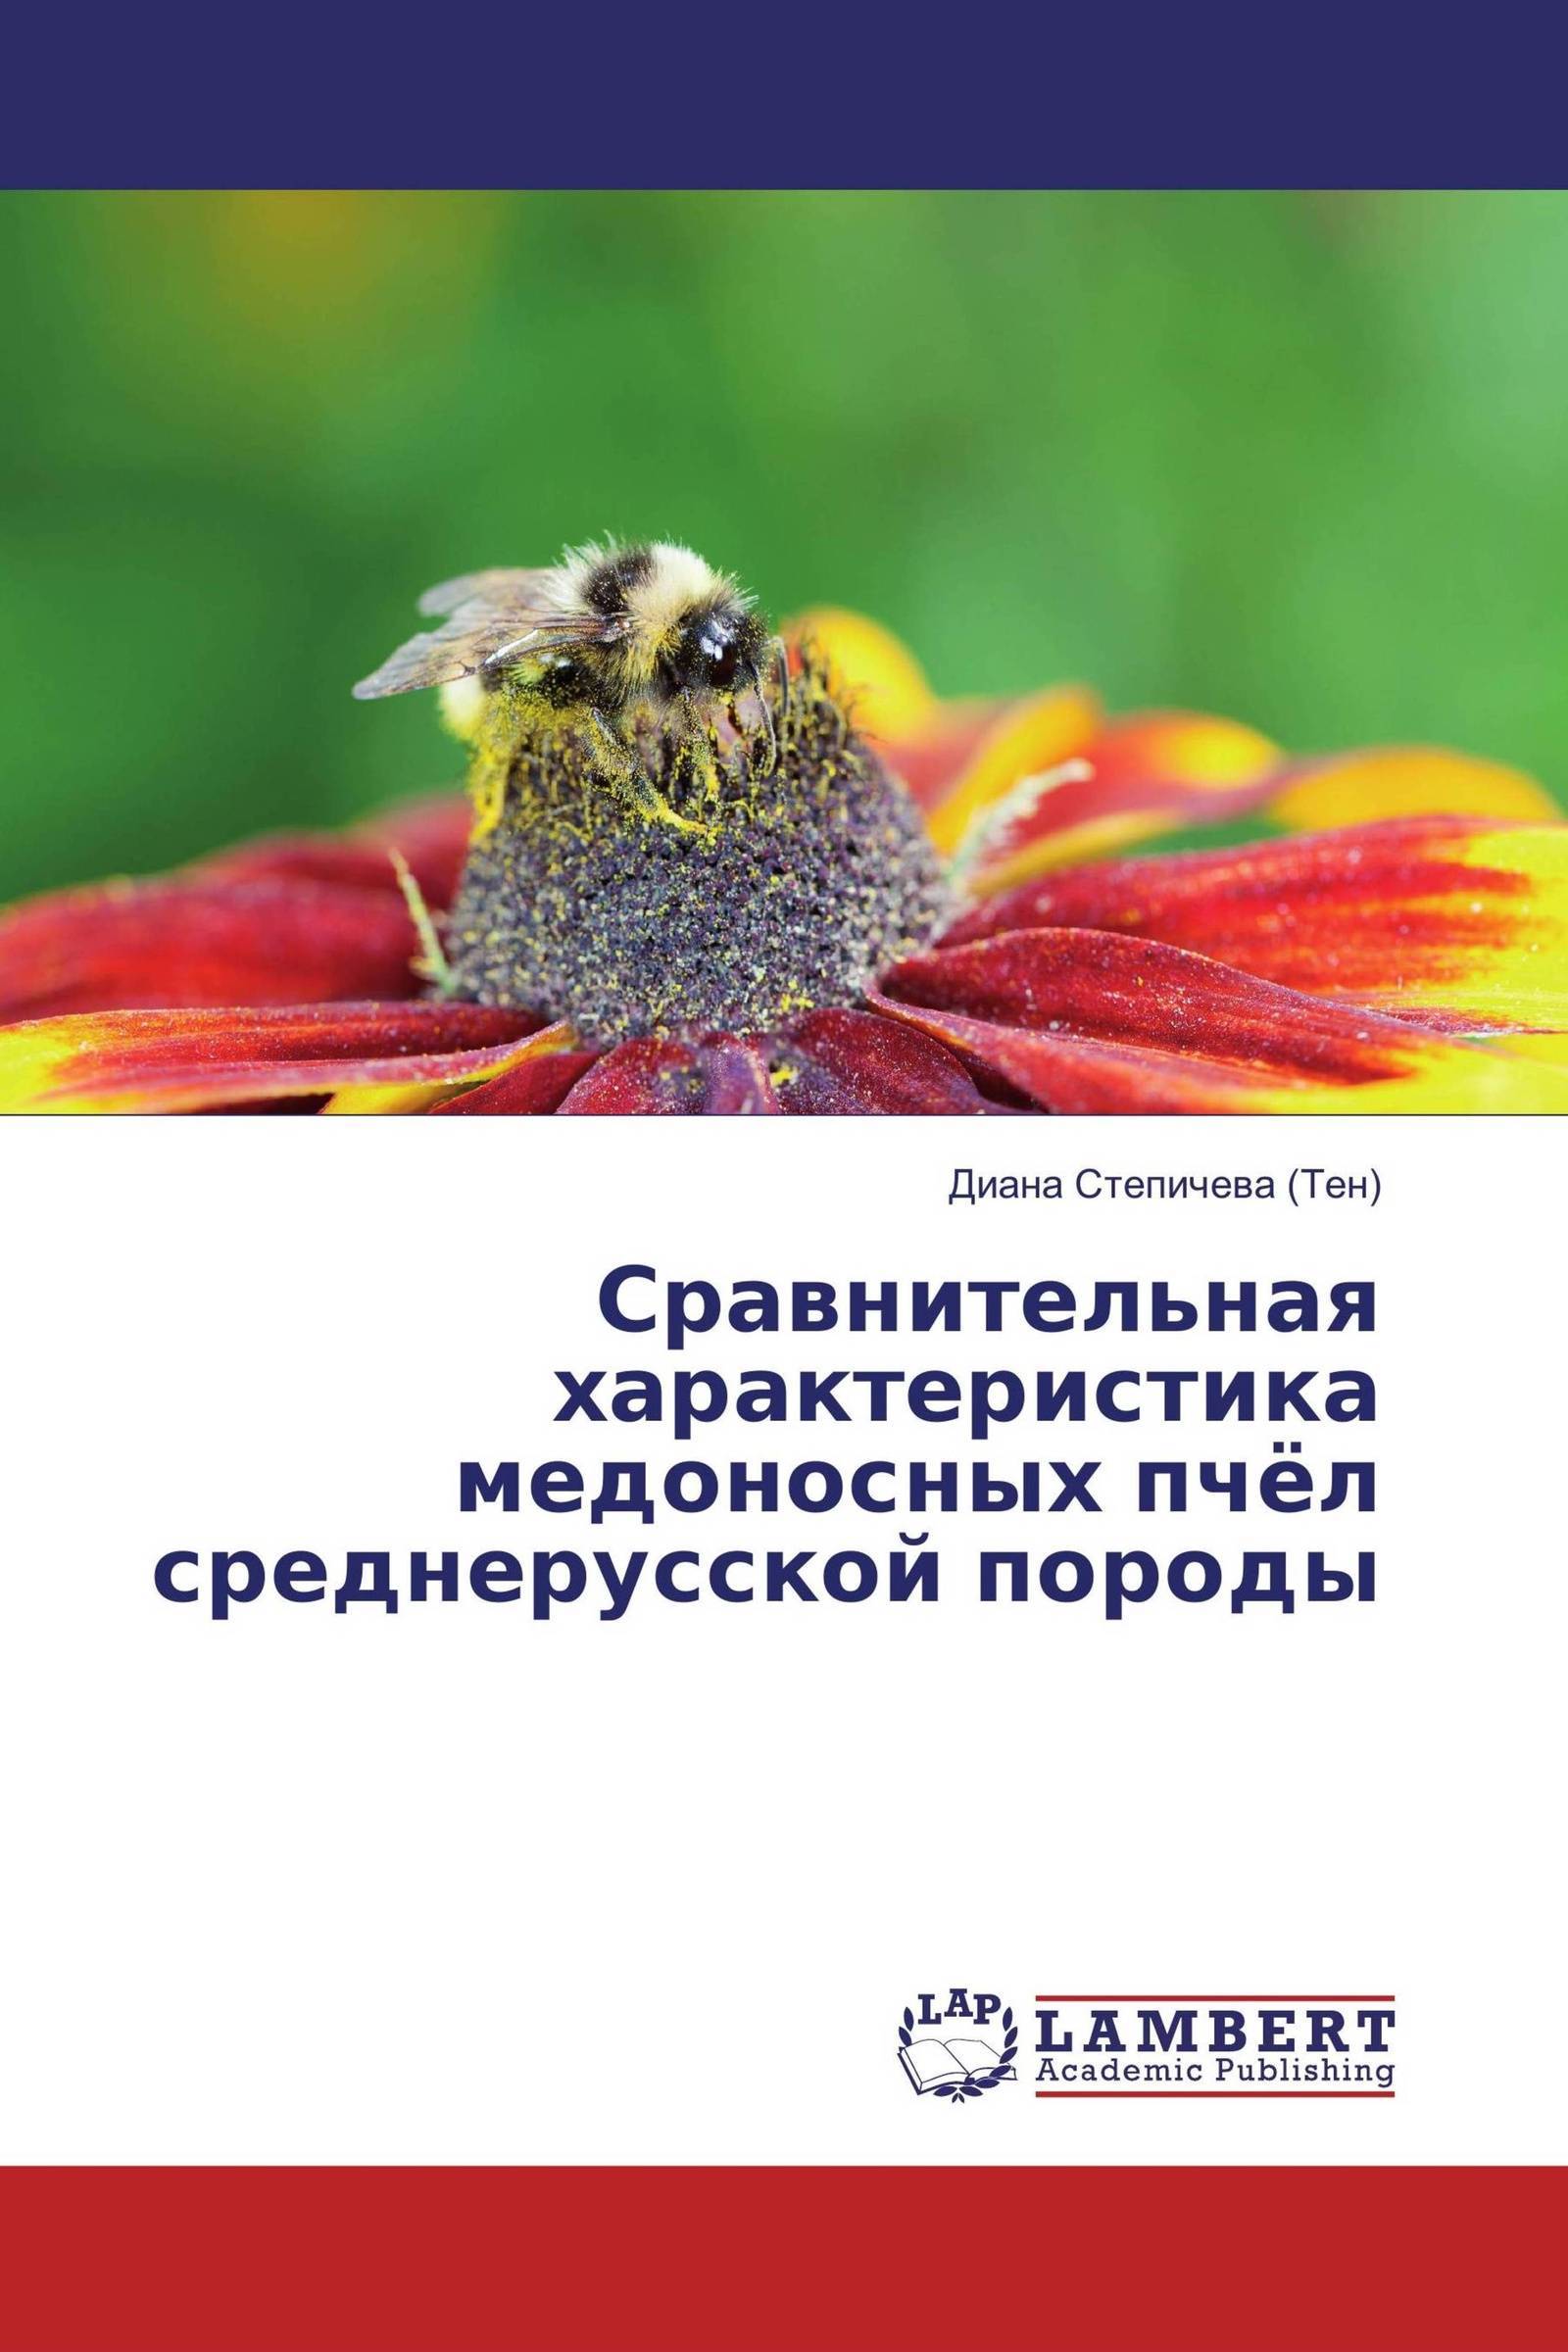 Породы пчел карпатка и среднерусская: подробный обзор с фото и видео
породы пчел карпатка и среднерусская: подробный обзор с фото и видео